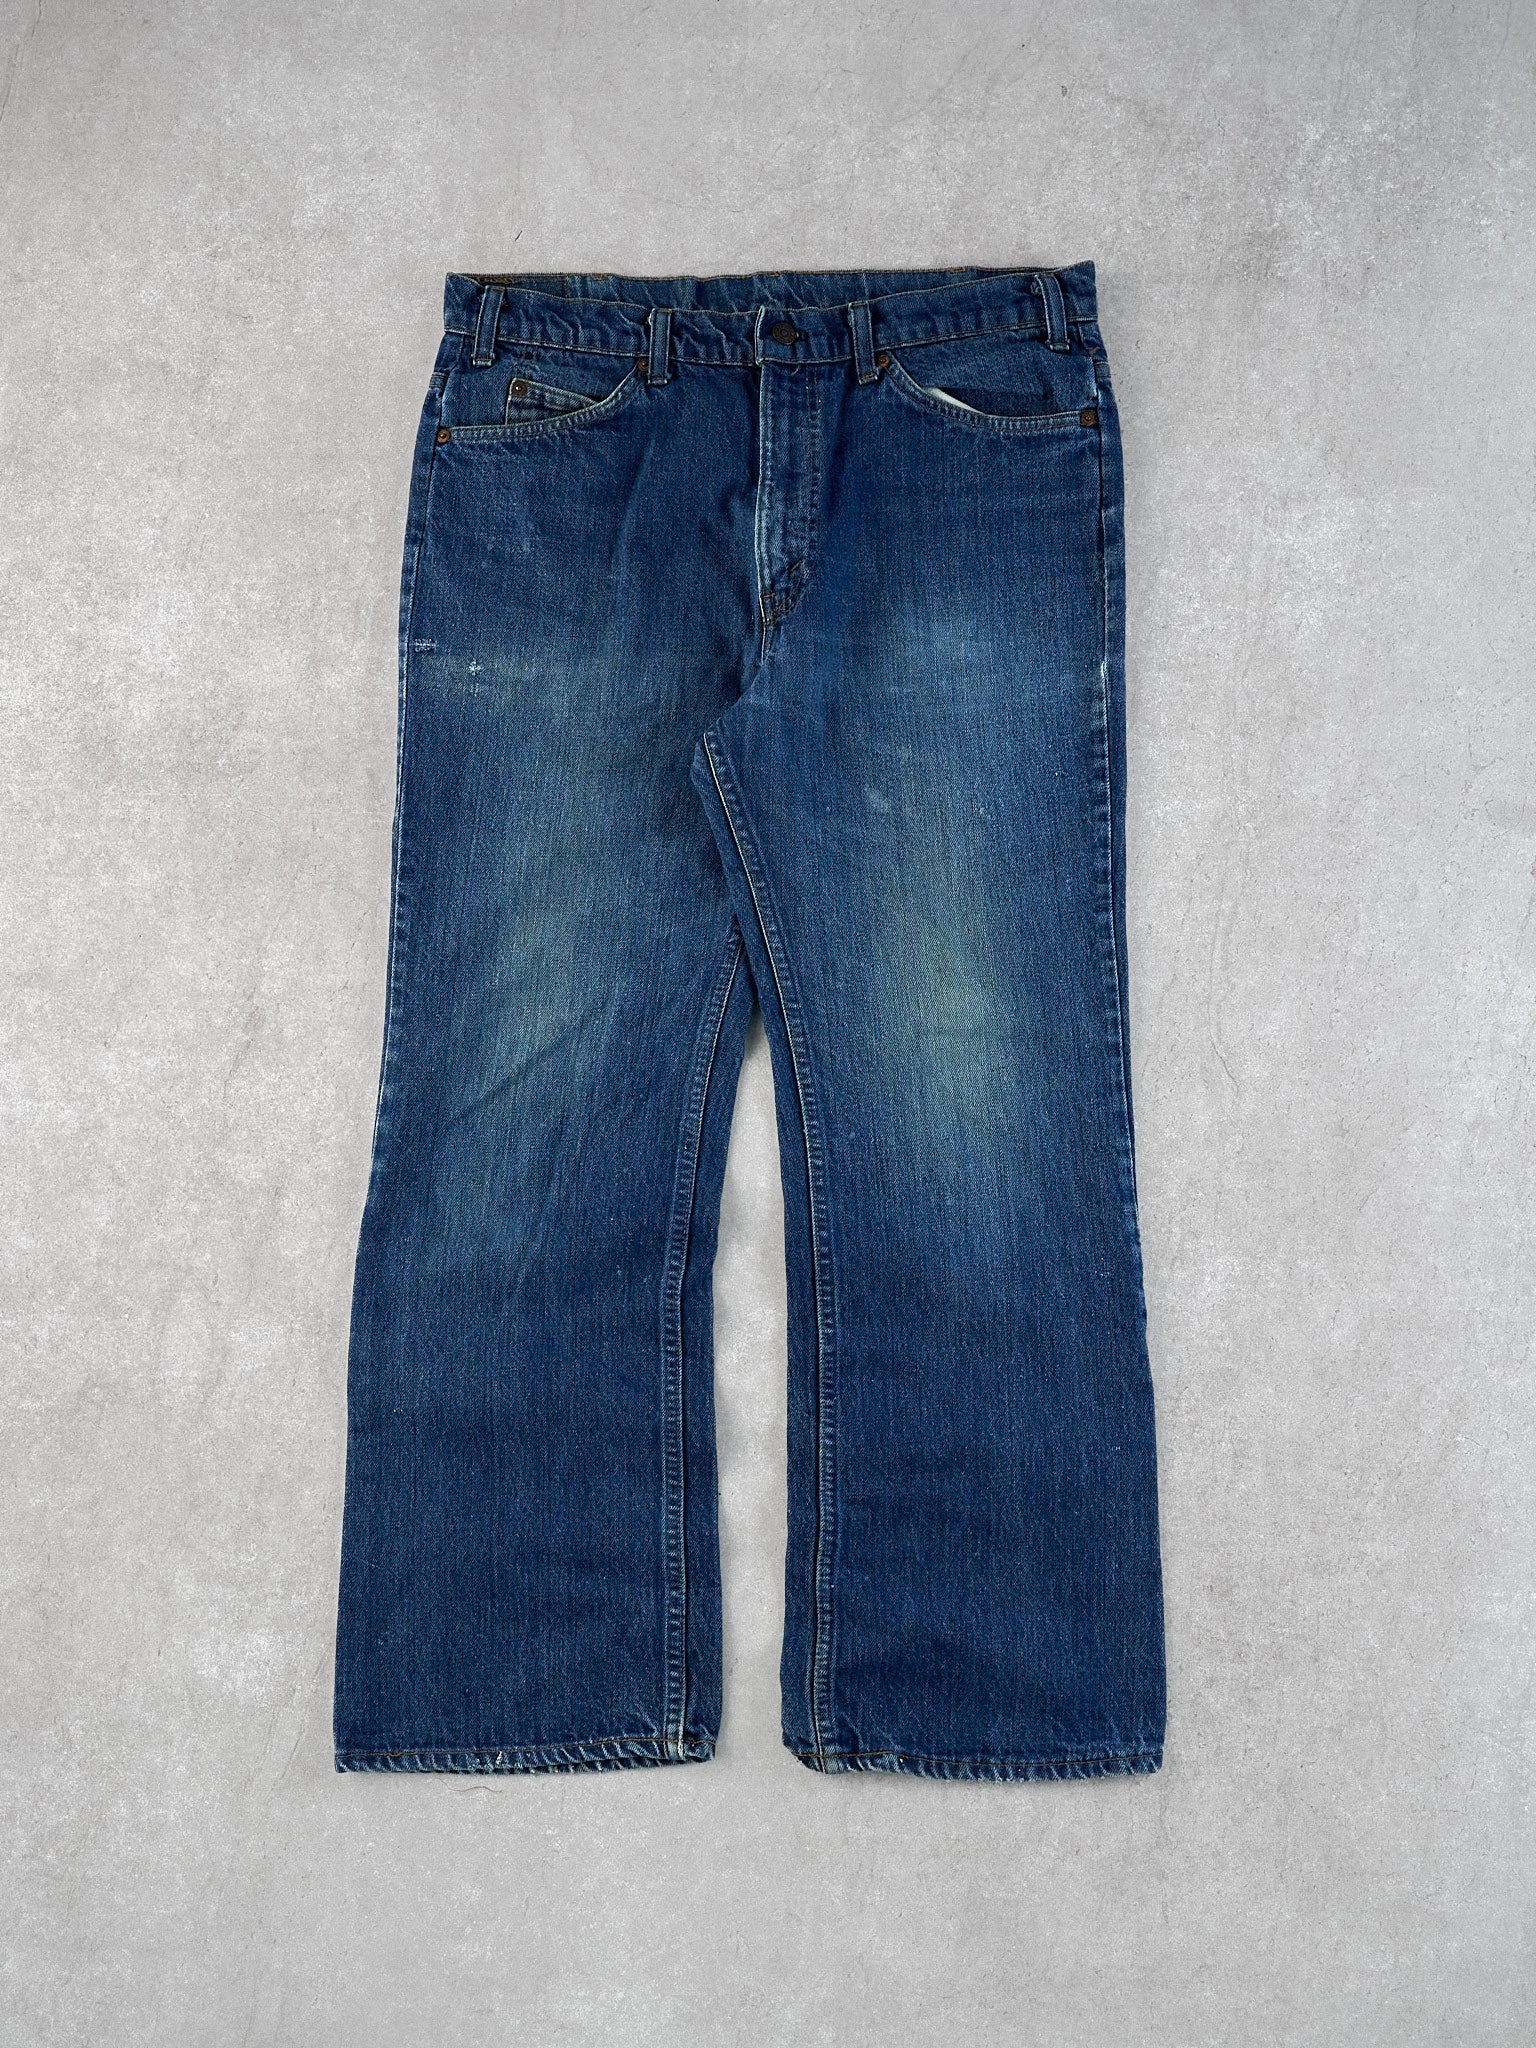 Vintage 70s Blue Levi's Denim Jeans (36x34)